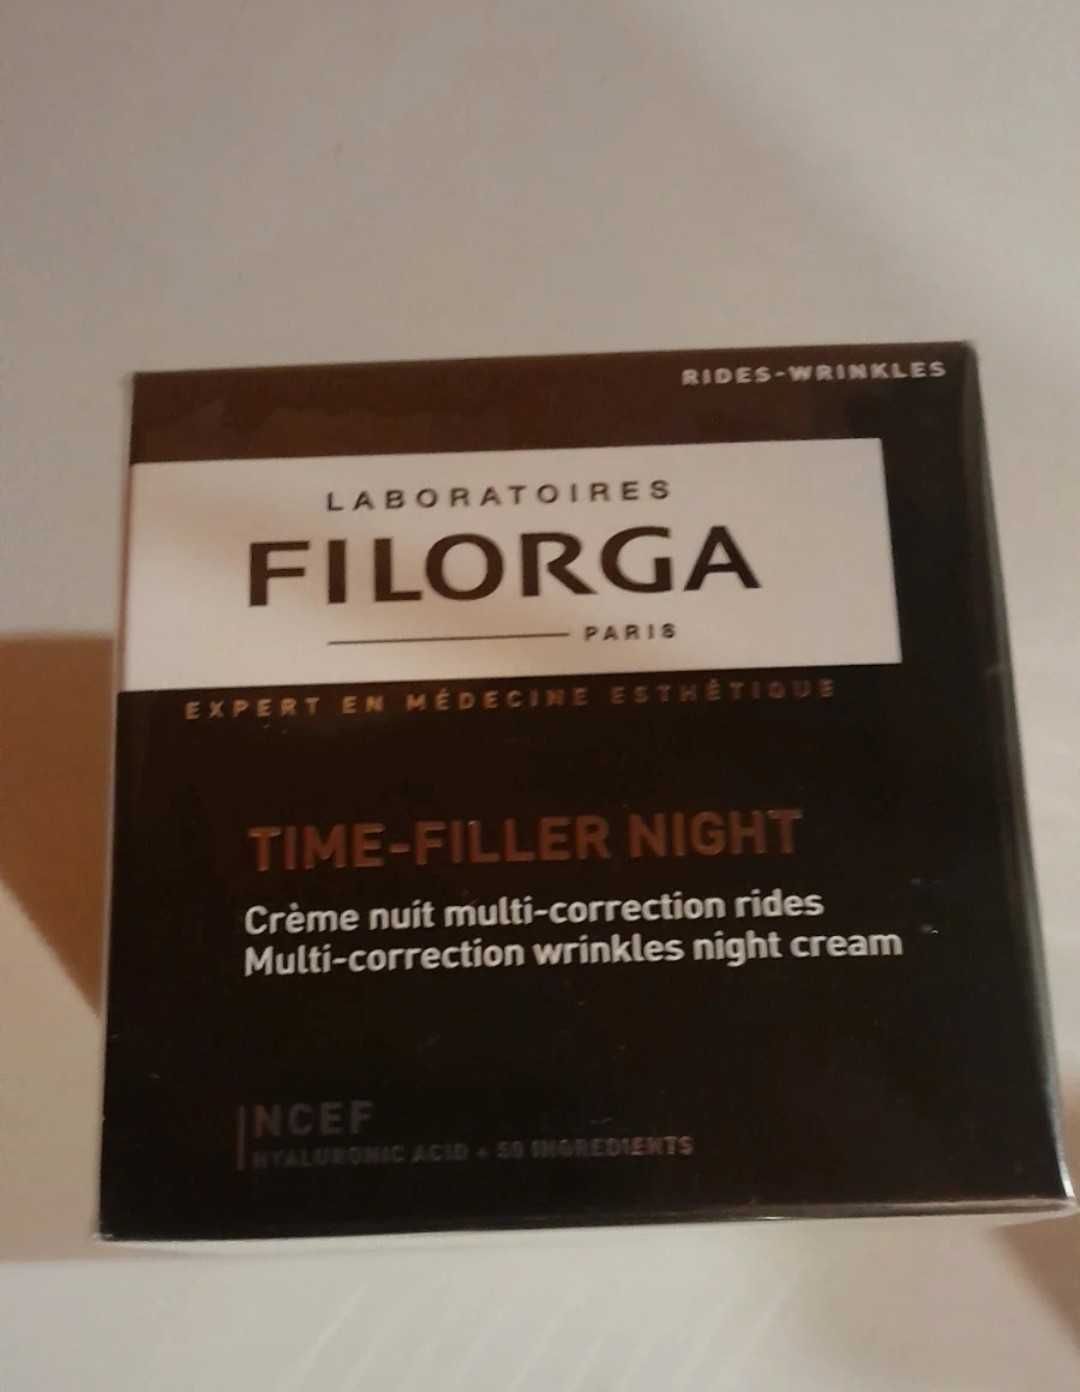 Filorga Time-filler night